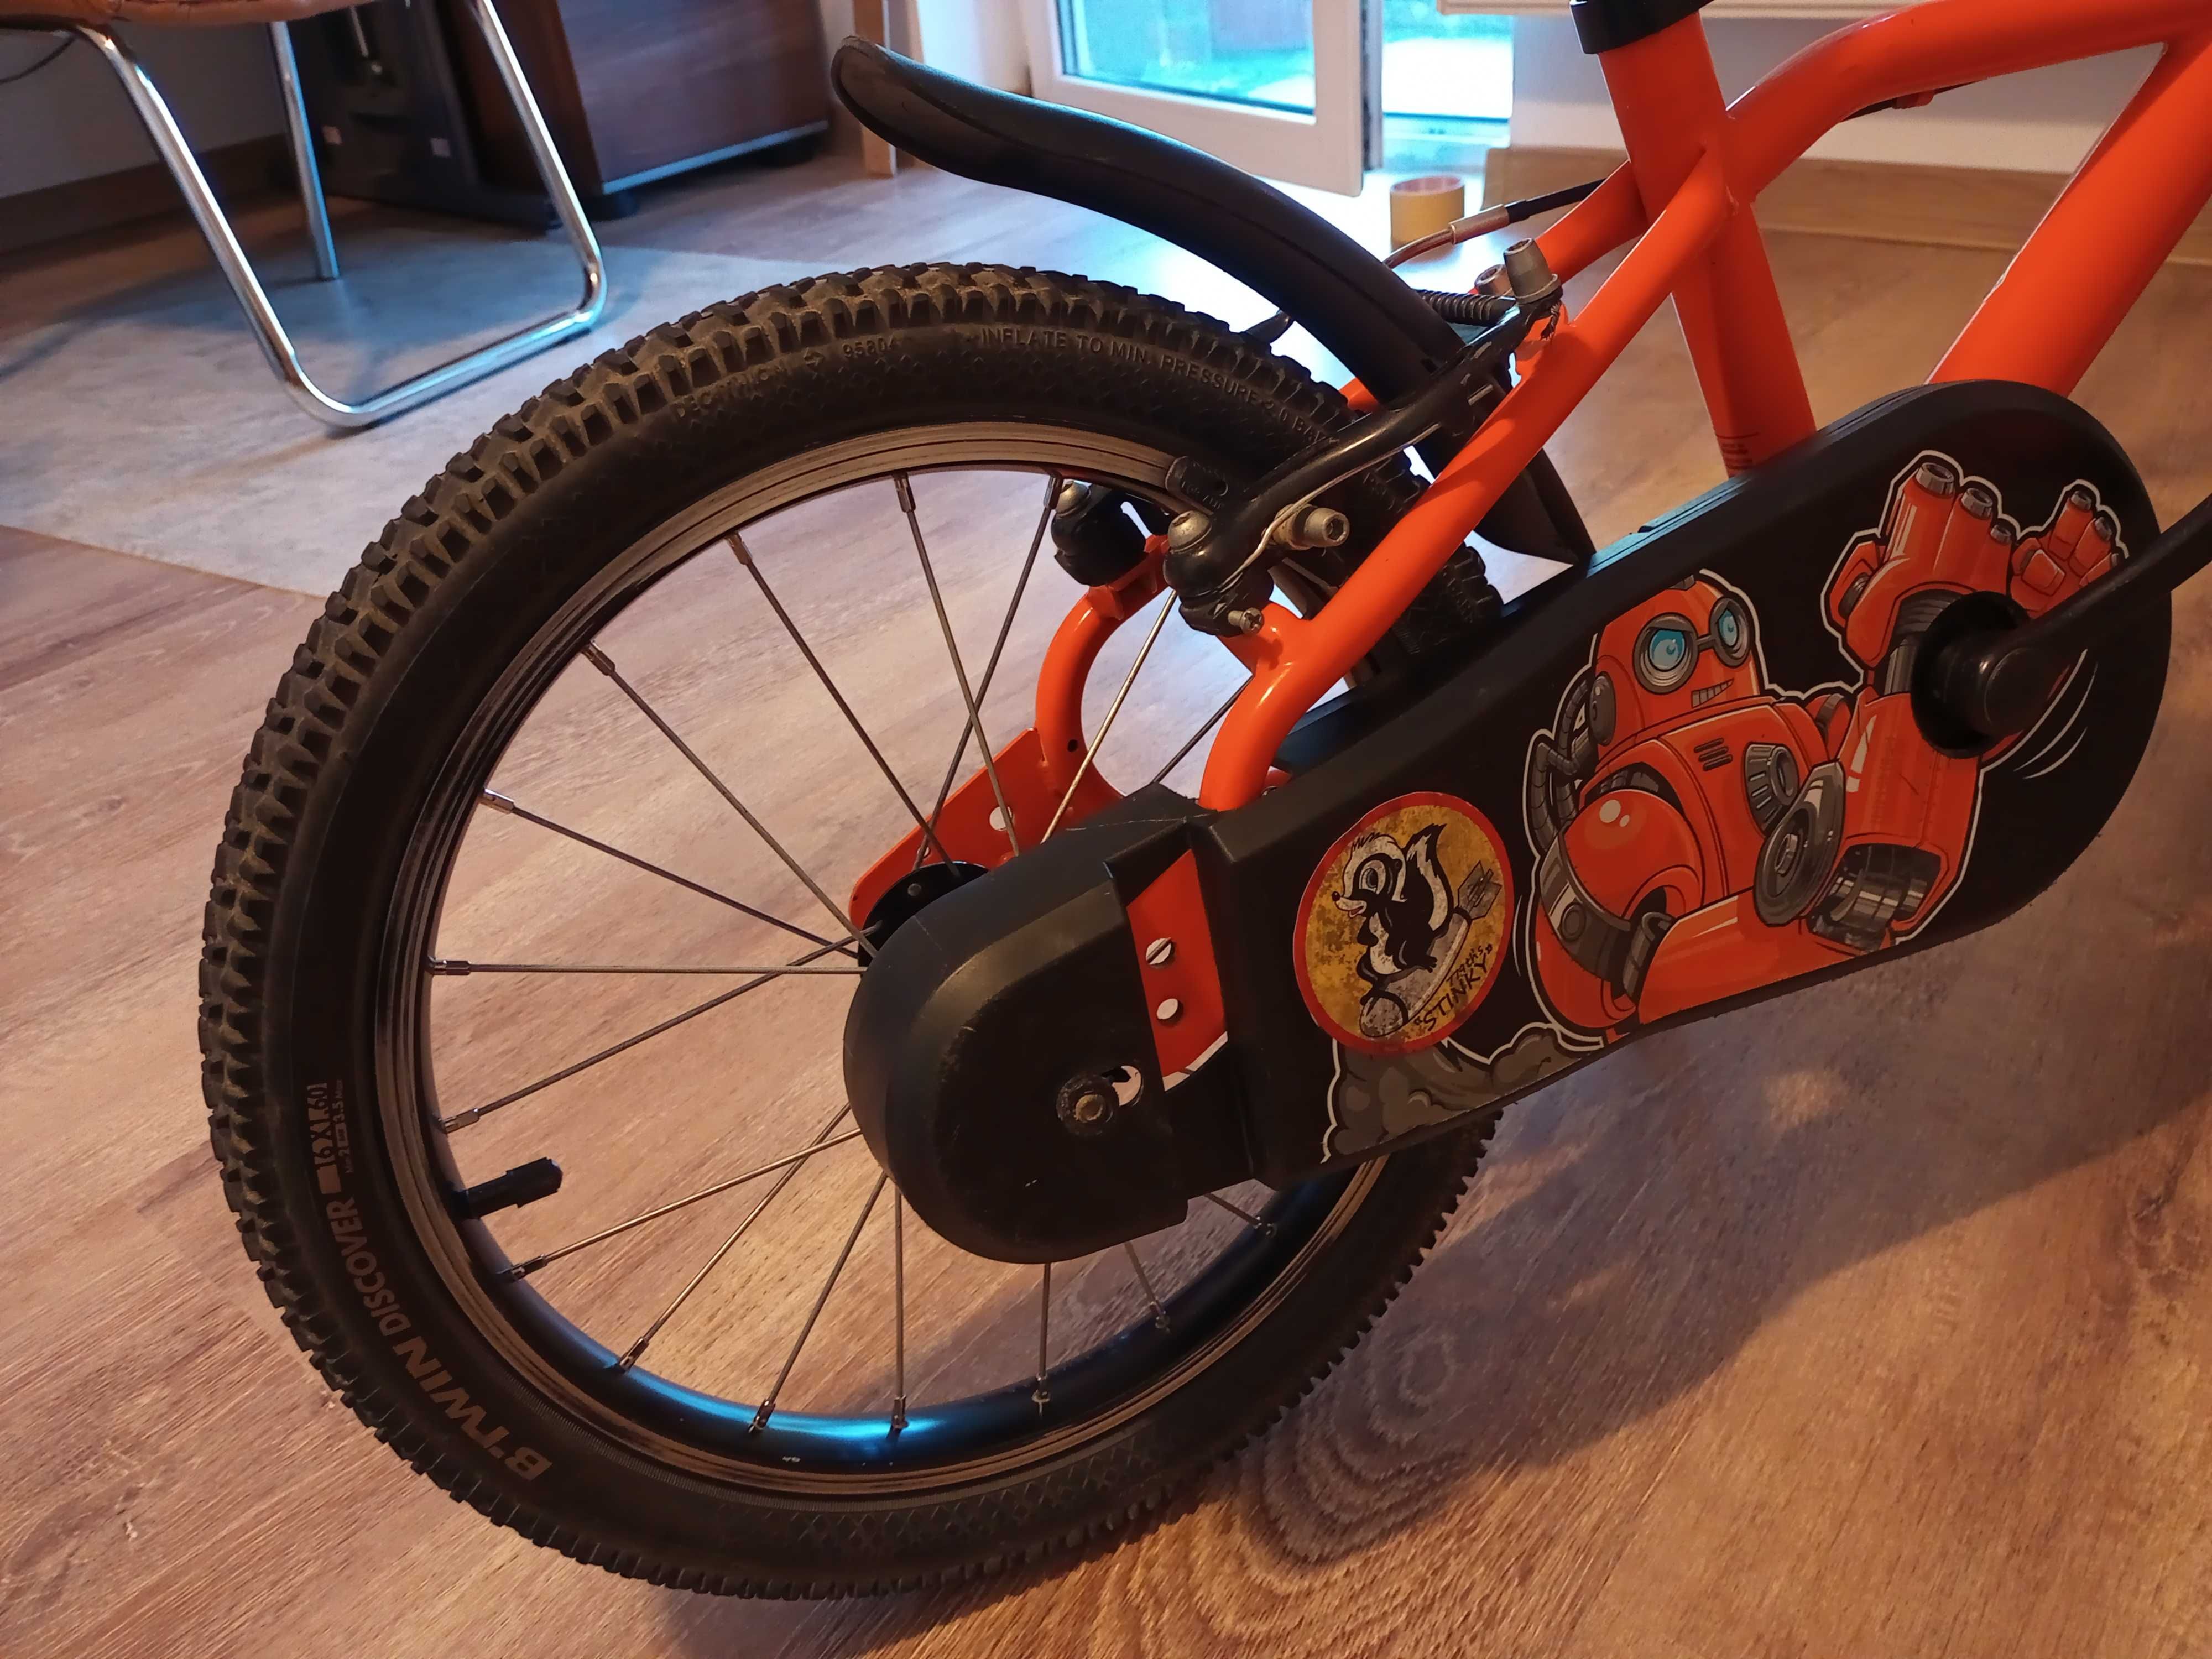 Bicicleta BTWIN 16" pentru copii intre 4 si6 ani (100-120 cm.)